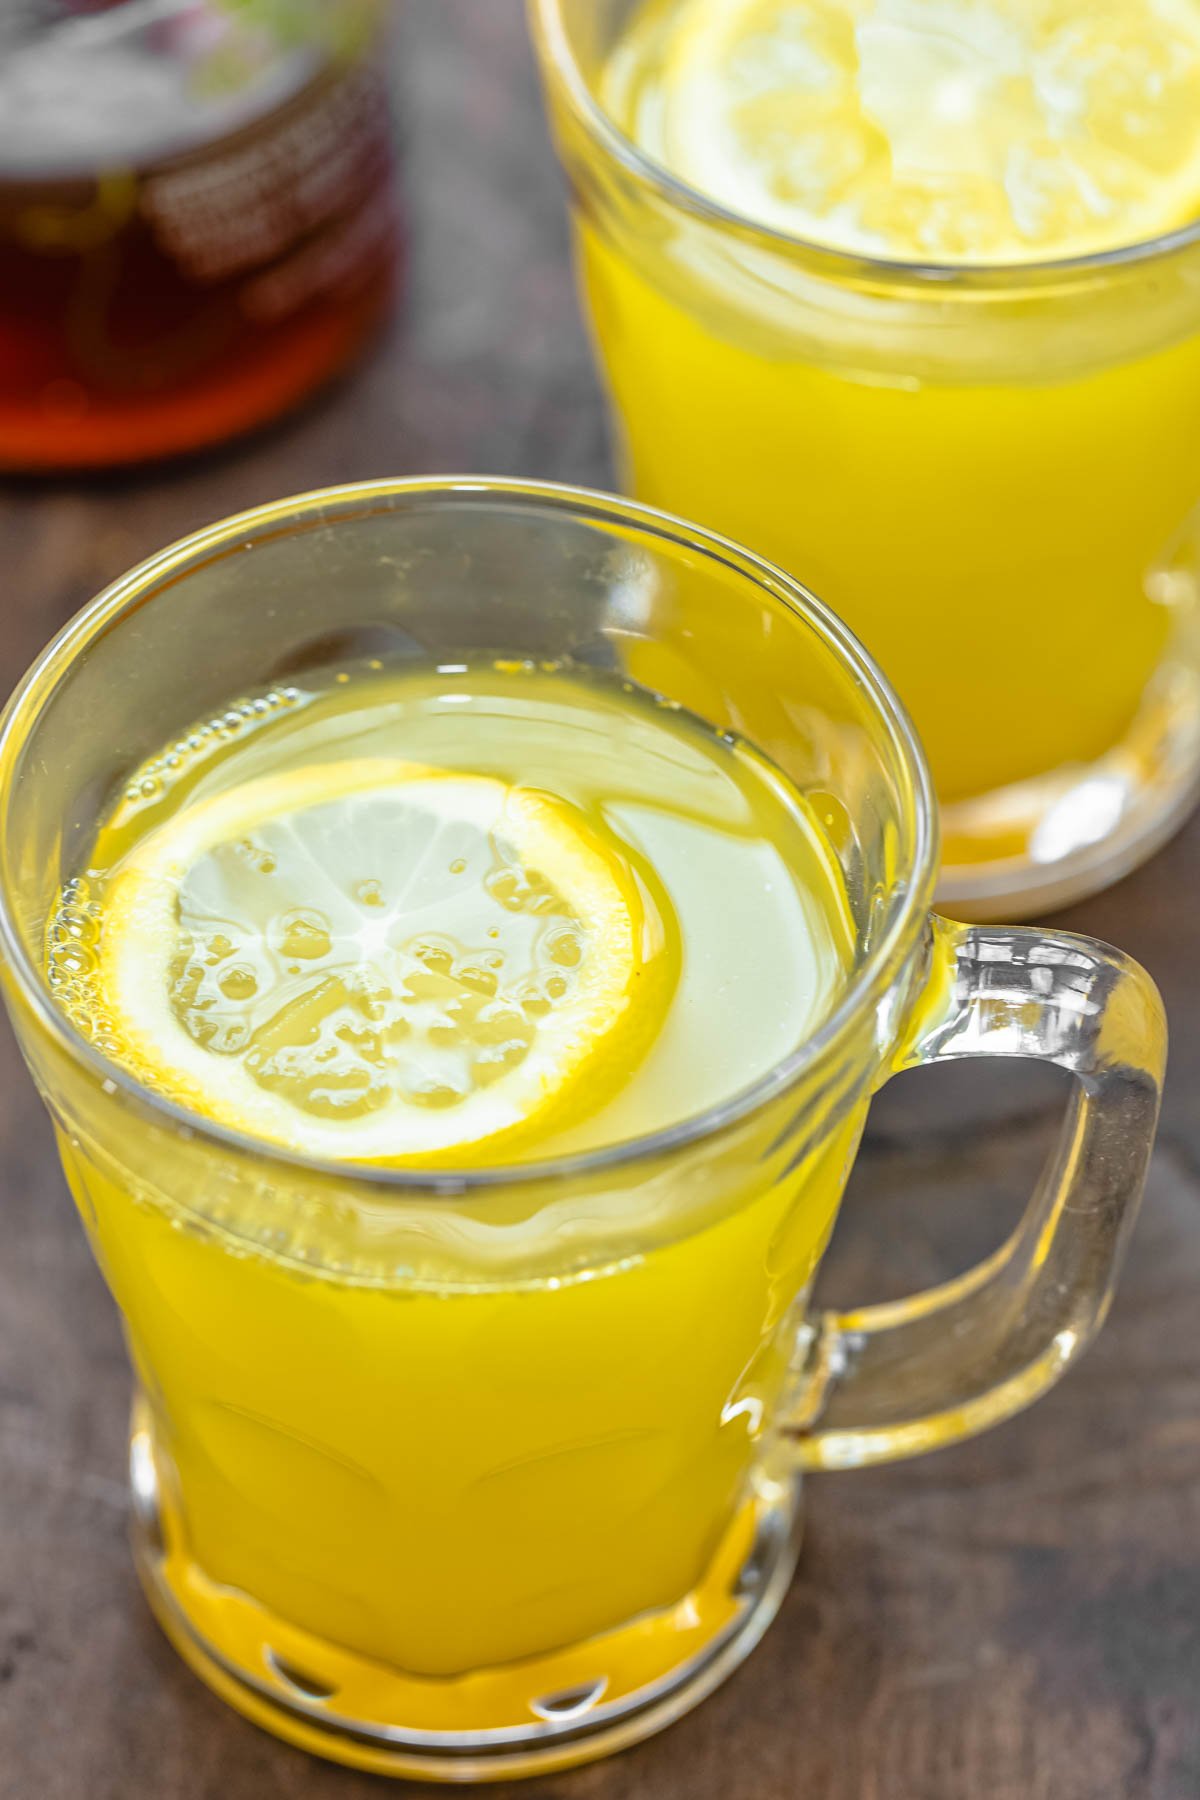 two glass mugs of lemon ginger tea with a sliced lemon in each mug.